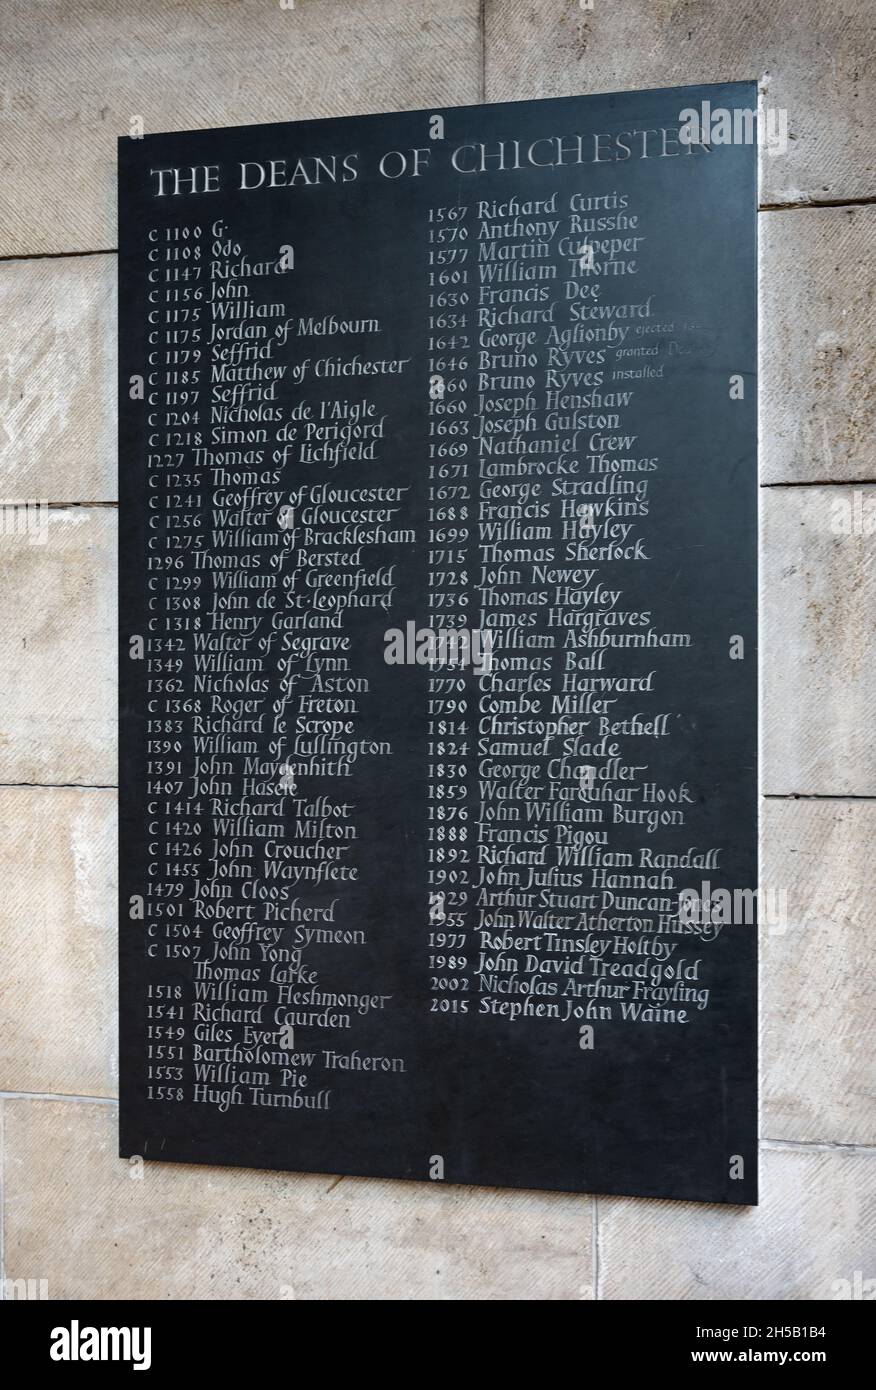 Wandtafel mit Liste der Deans of Chichester in Chichester Cathedral, Chichester, Großbritannien. Mit Dank an den Dekan und das Kapitel der Chichester Kathedrale. Stockfoto